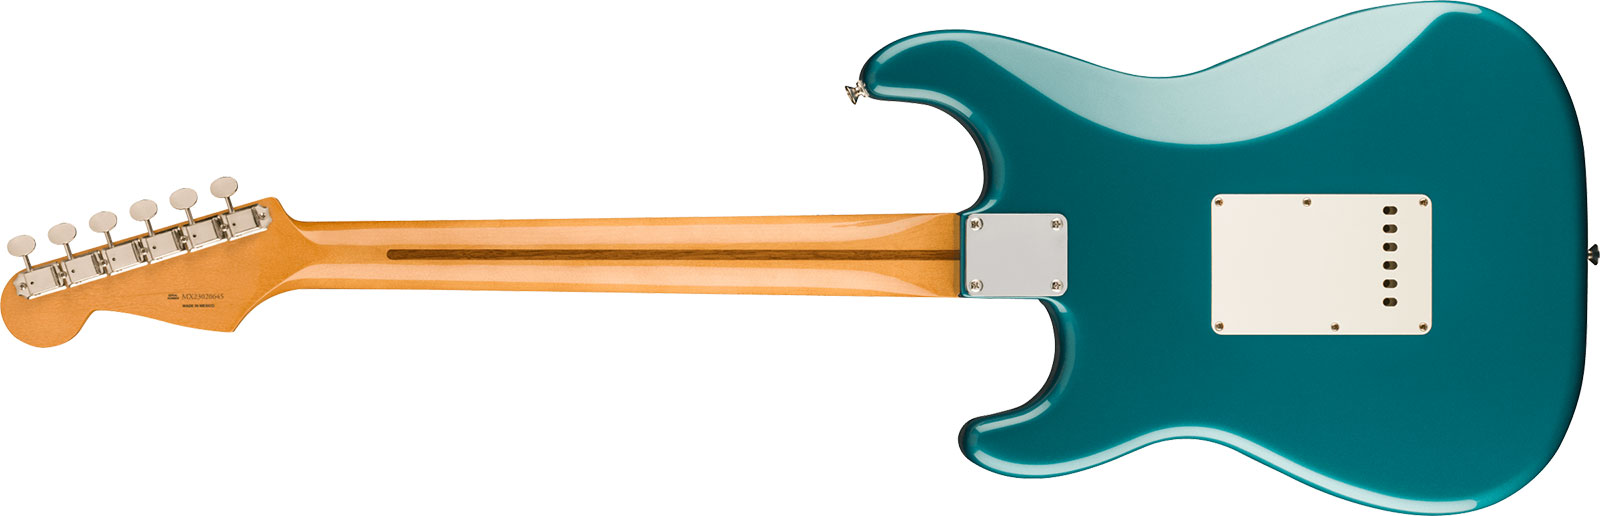 Fender Strat 50s Vintera 2 Mex 3s Trem Mn - Ocean Turquoise - Elektrische gitaar in Str-vorm - Variation 1